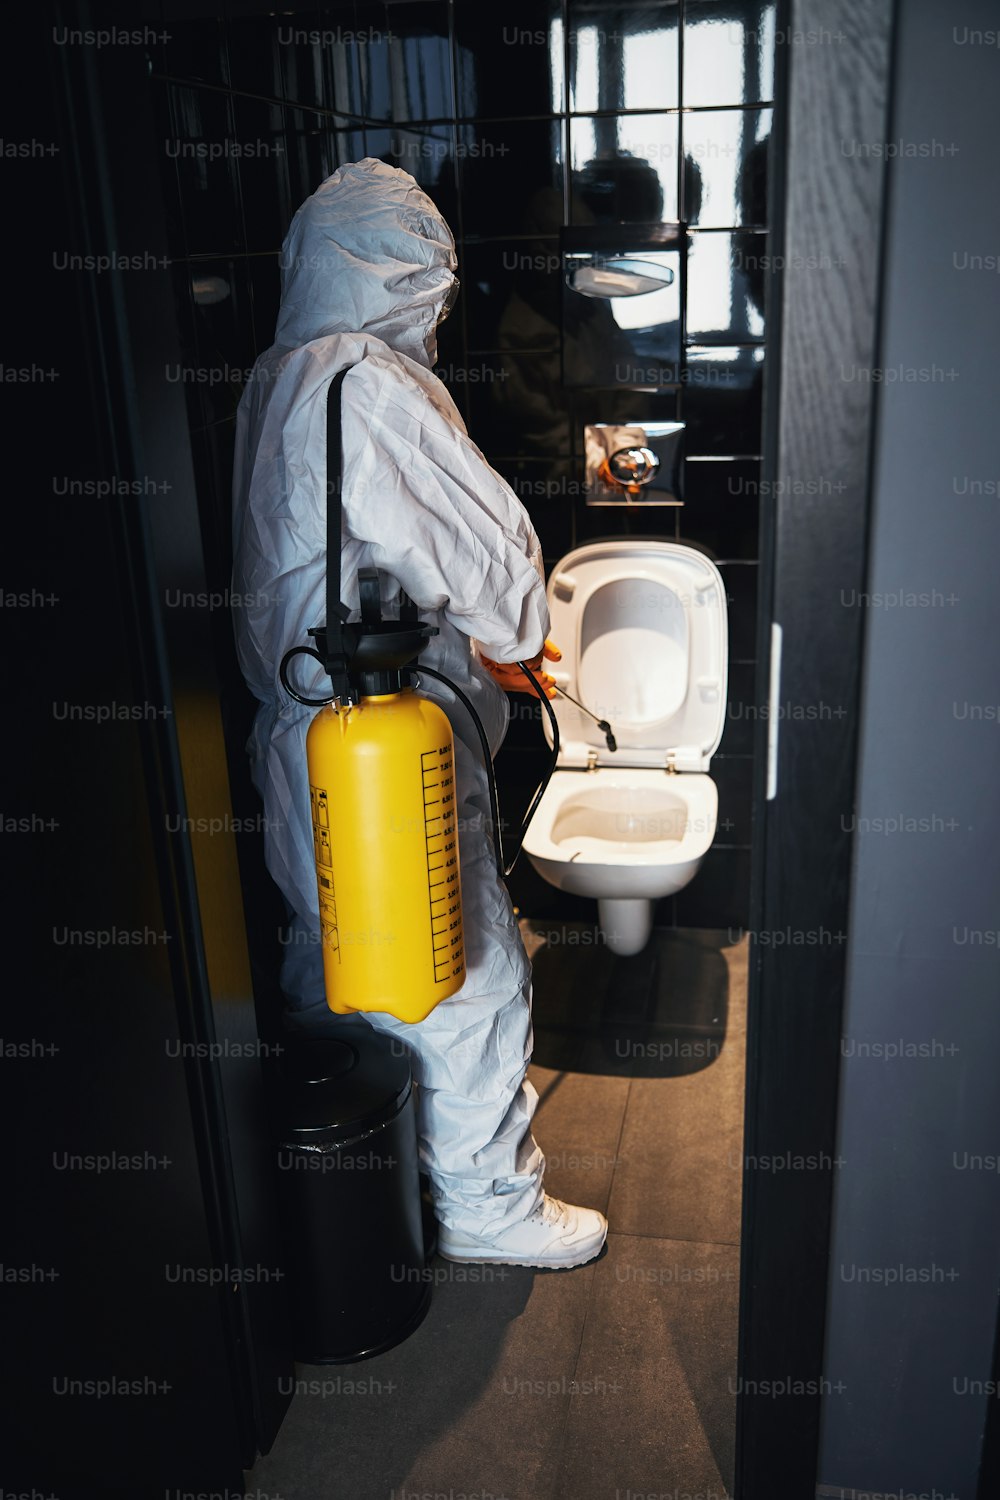 Vue de dos d’un nettoyeur professionnel vêtu d’une combinaison de protection contre les matières dangereuses et de gants en caoutchouc pulvérisant un désinfectant sur la cuvette des toilettes